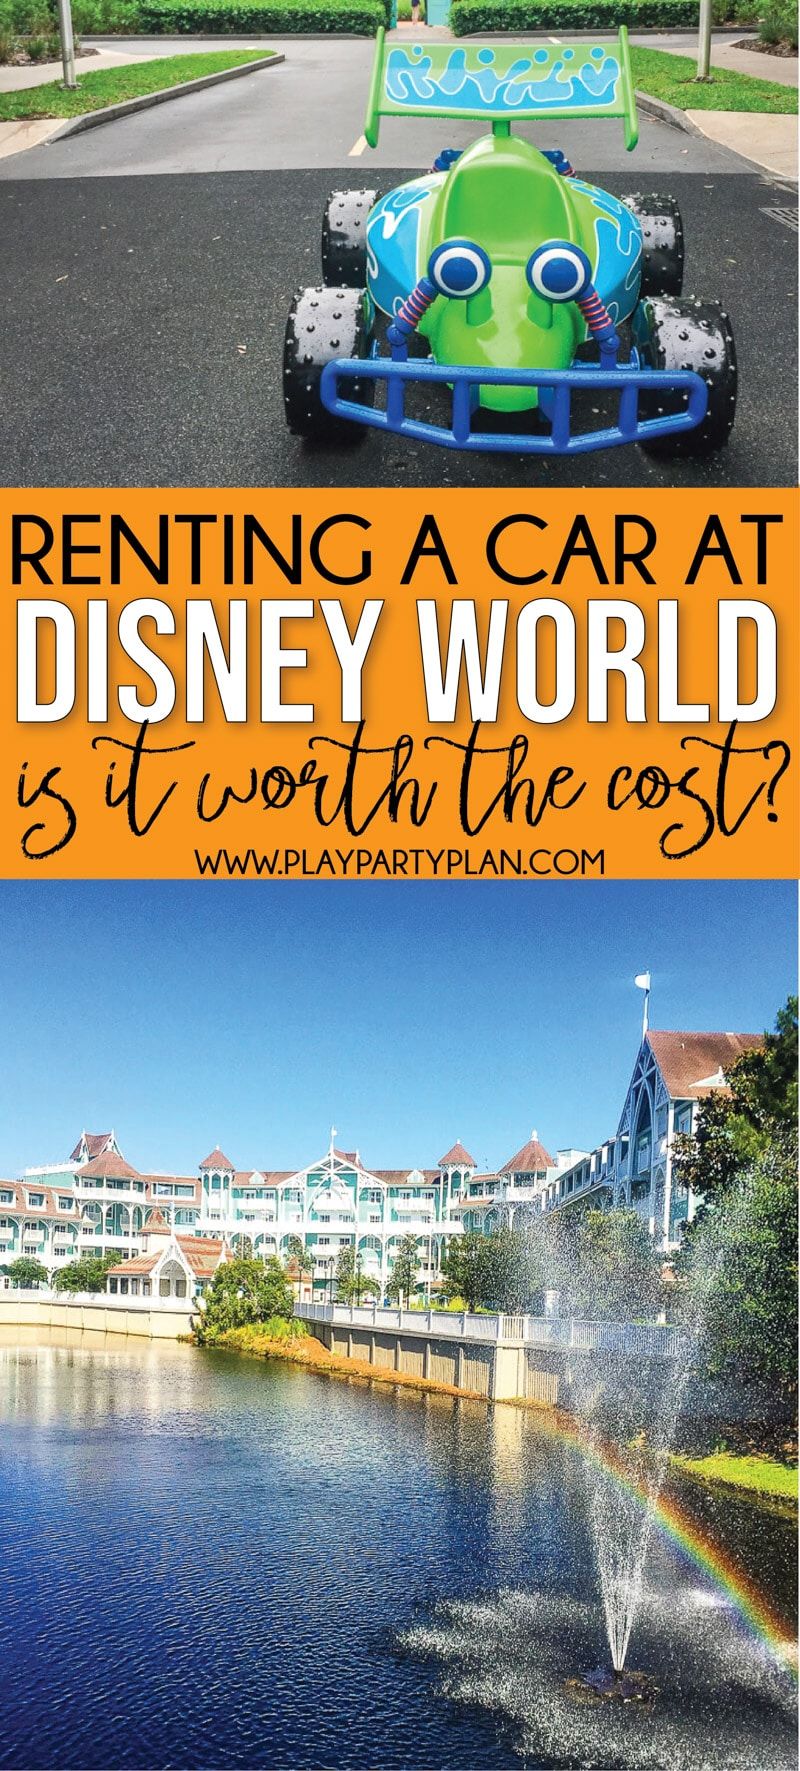 Czy powinieneś wynająć samochód w Disney World? 12 powodów, dla których absolutnie powinieneś!